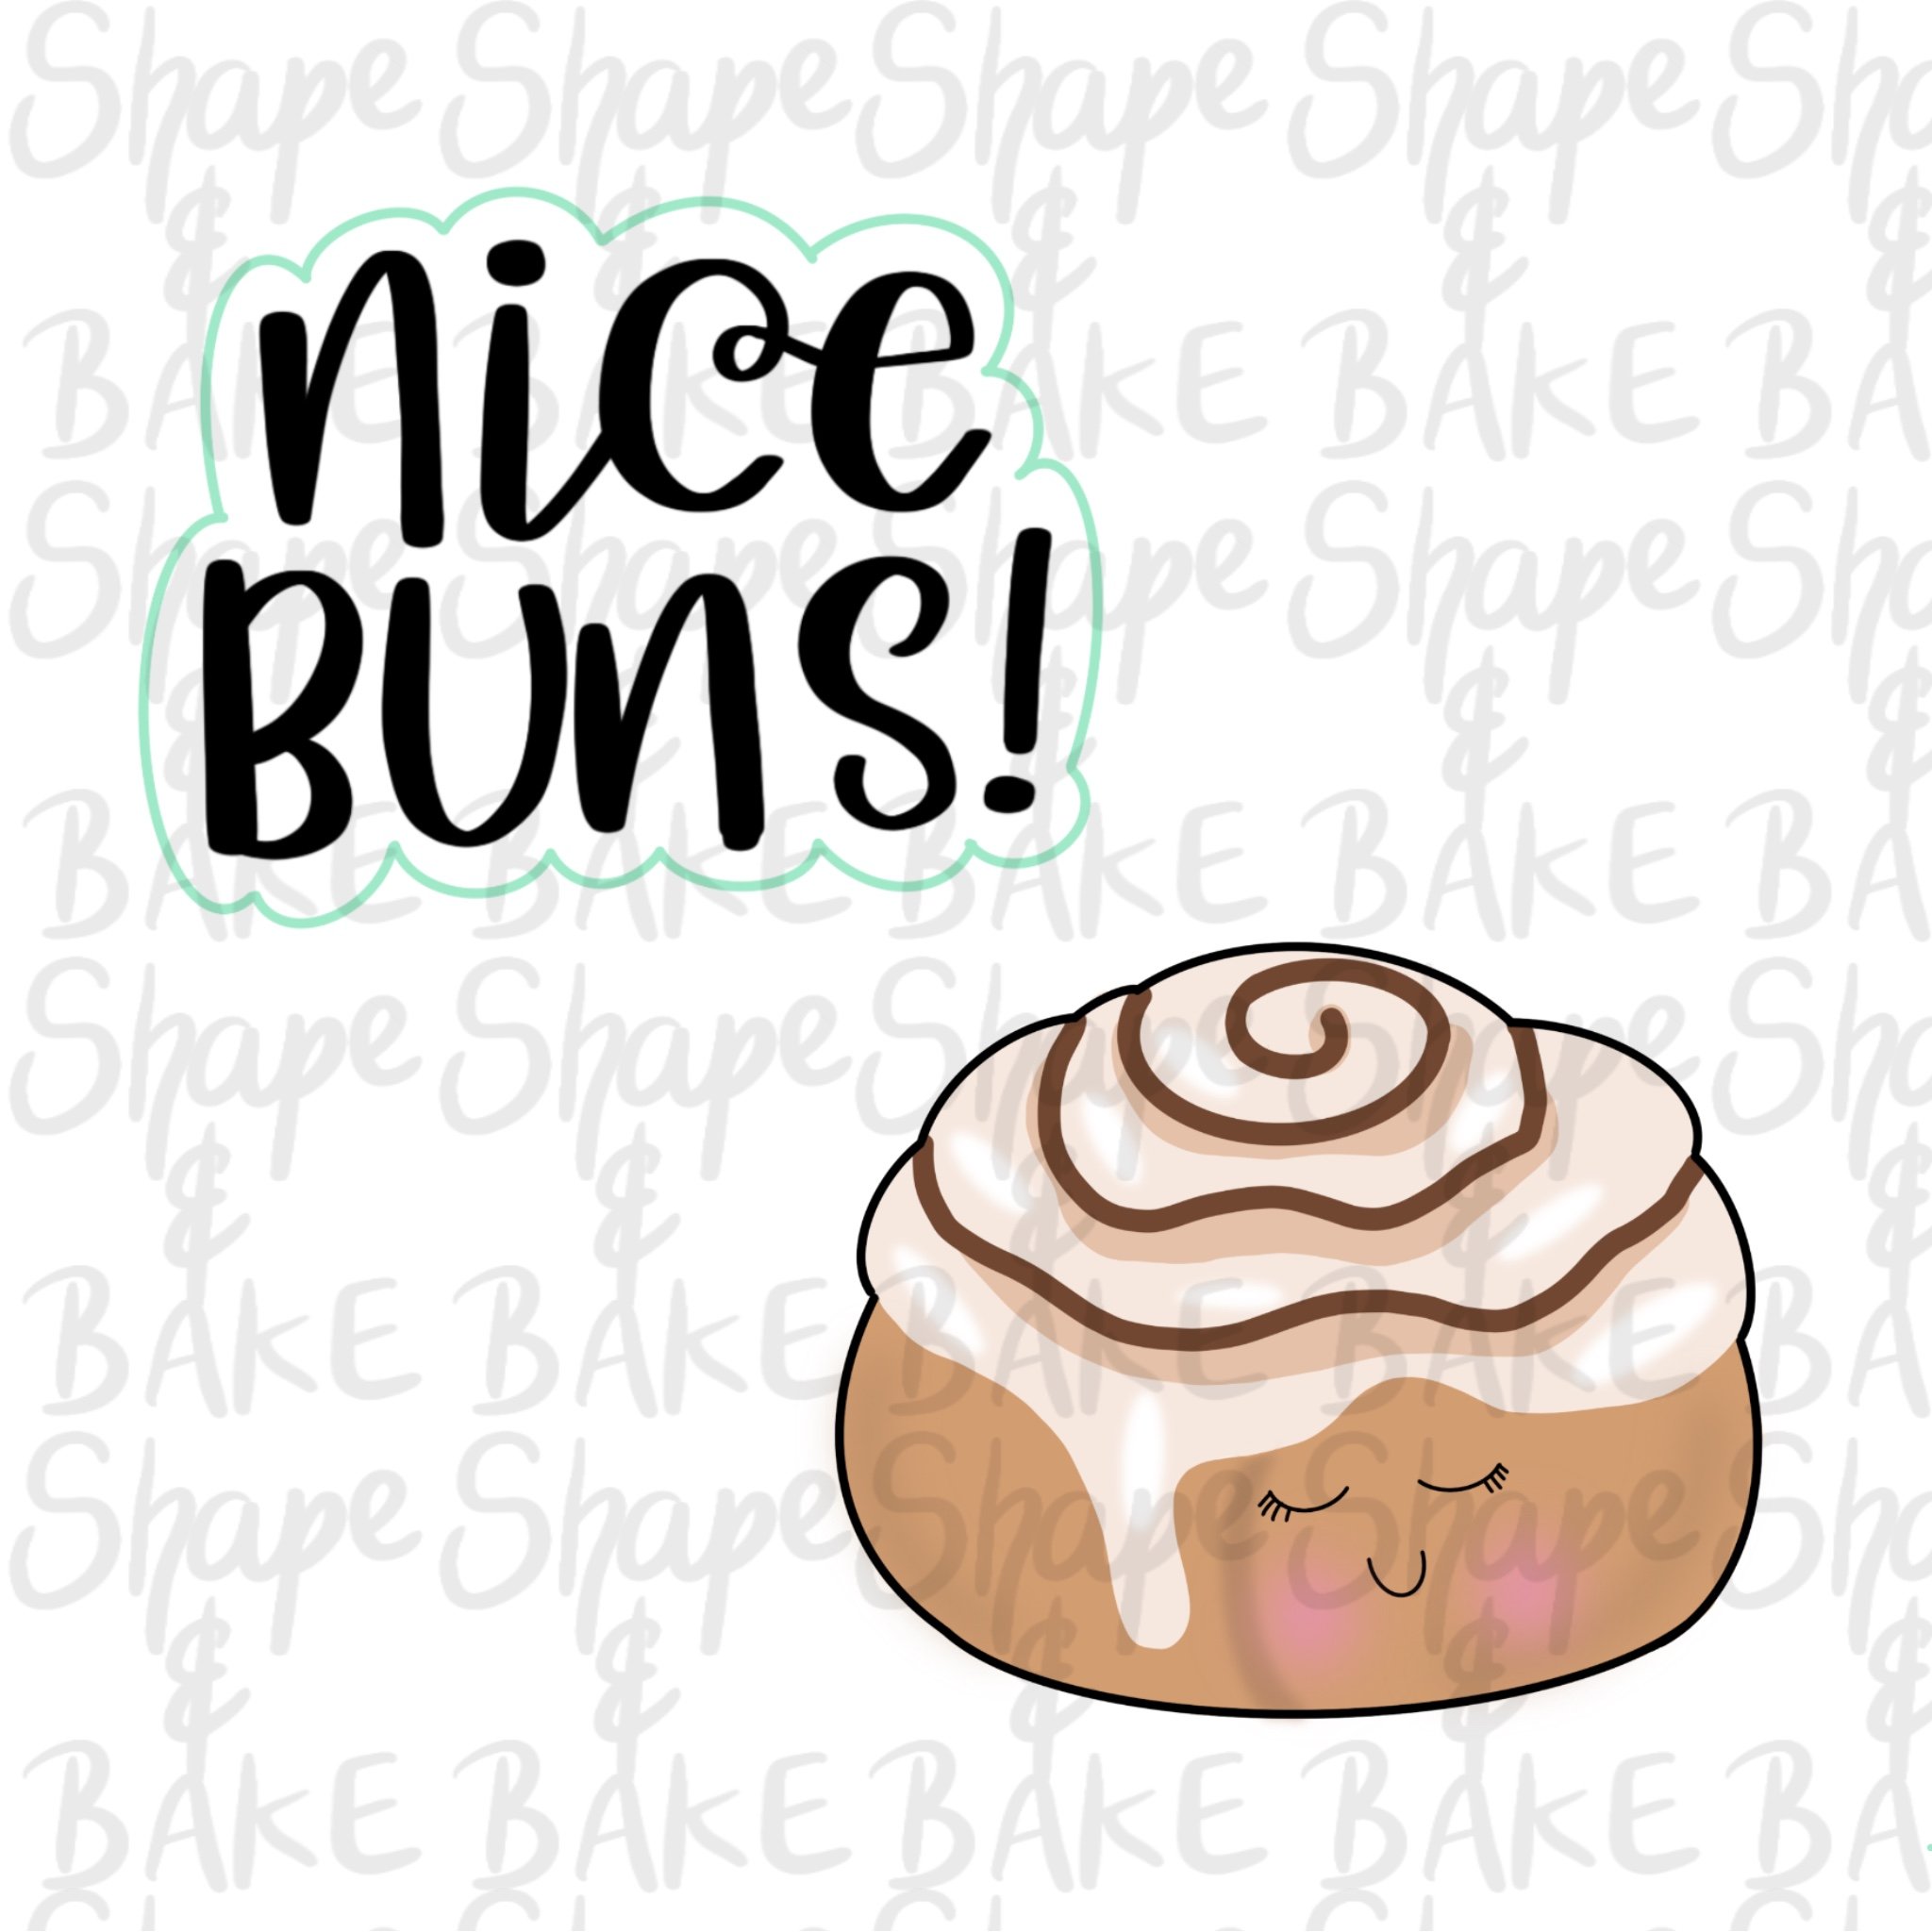 Nice buns